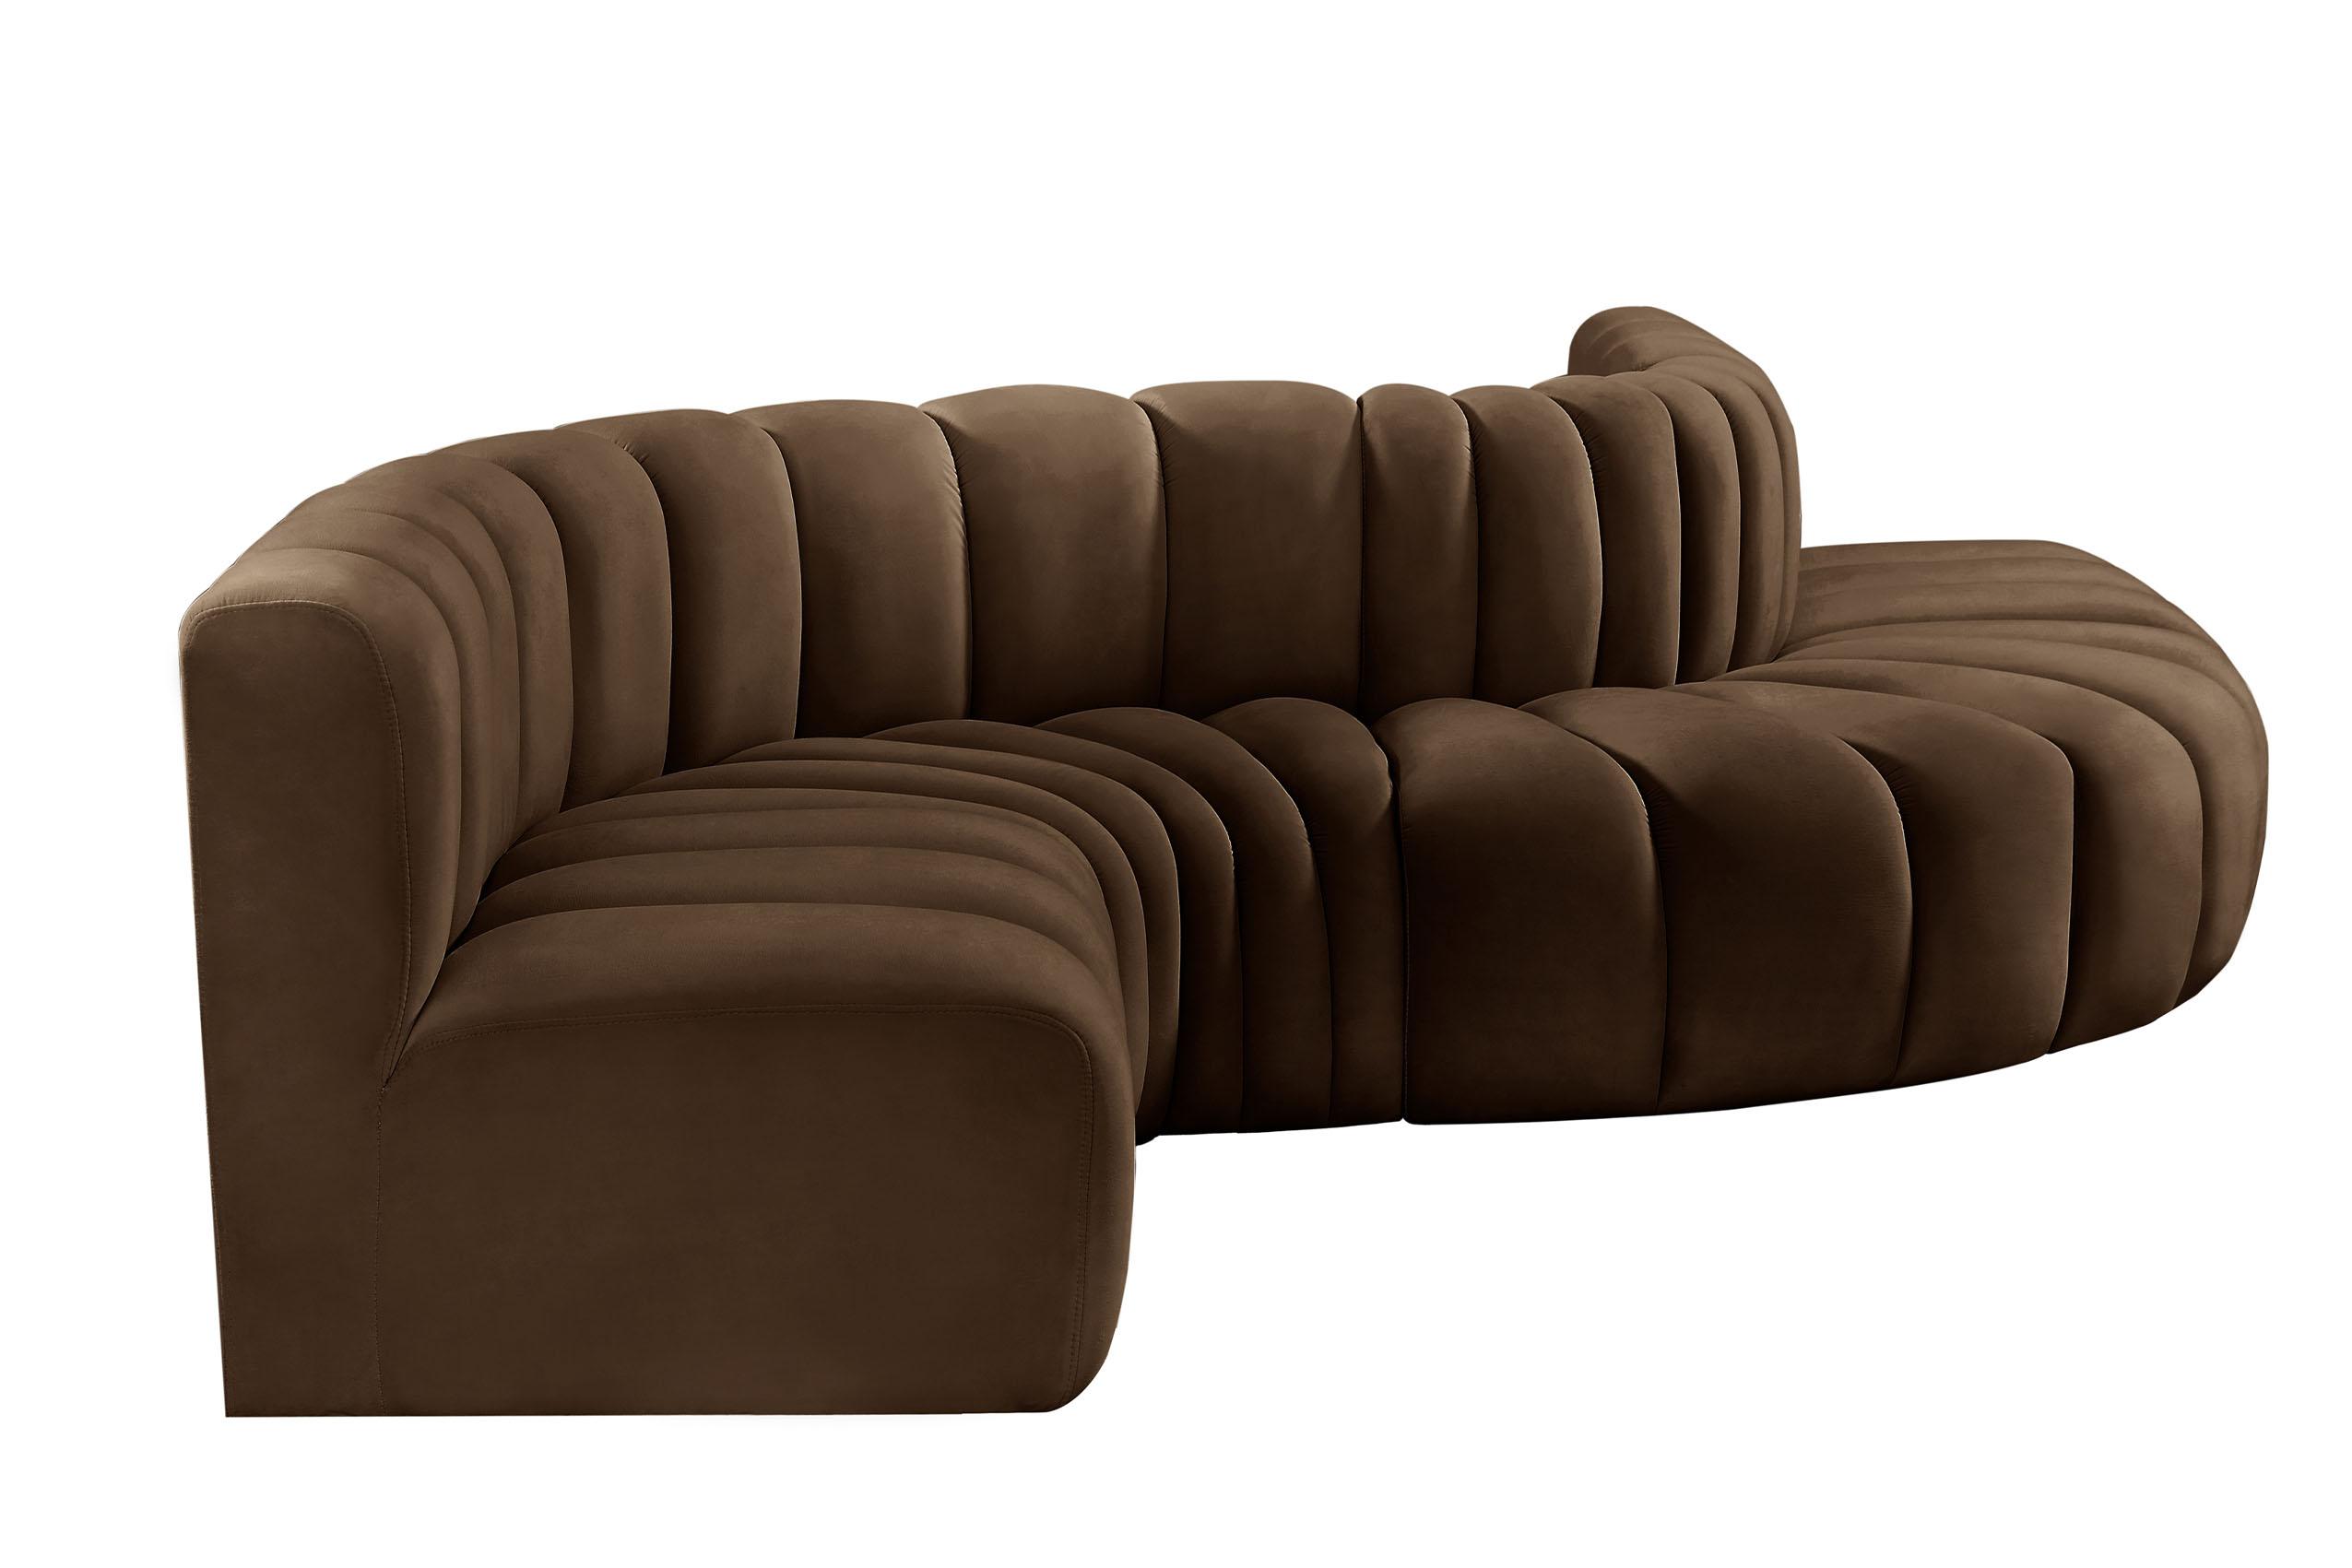 

    
103Brown-S6A Meridian Furniture Modular Sectional Sofa
